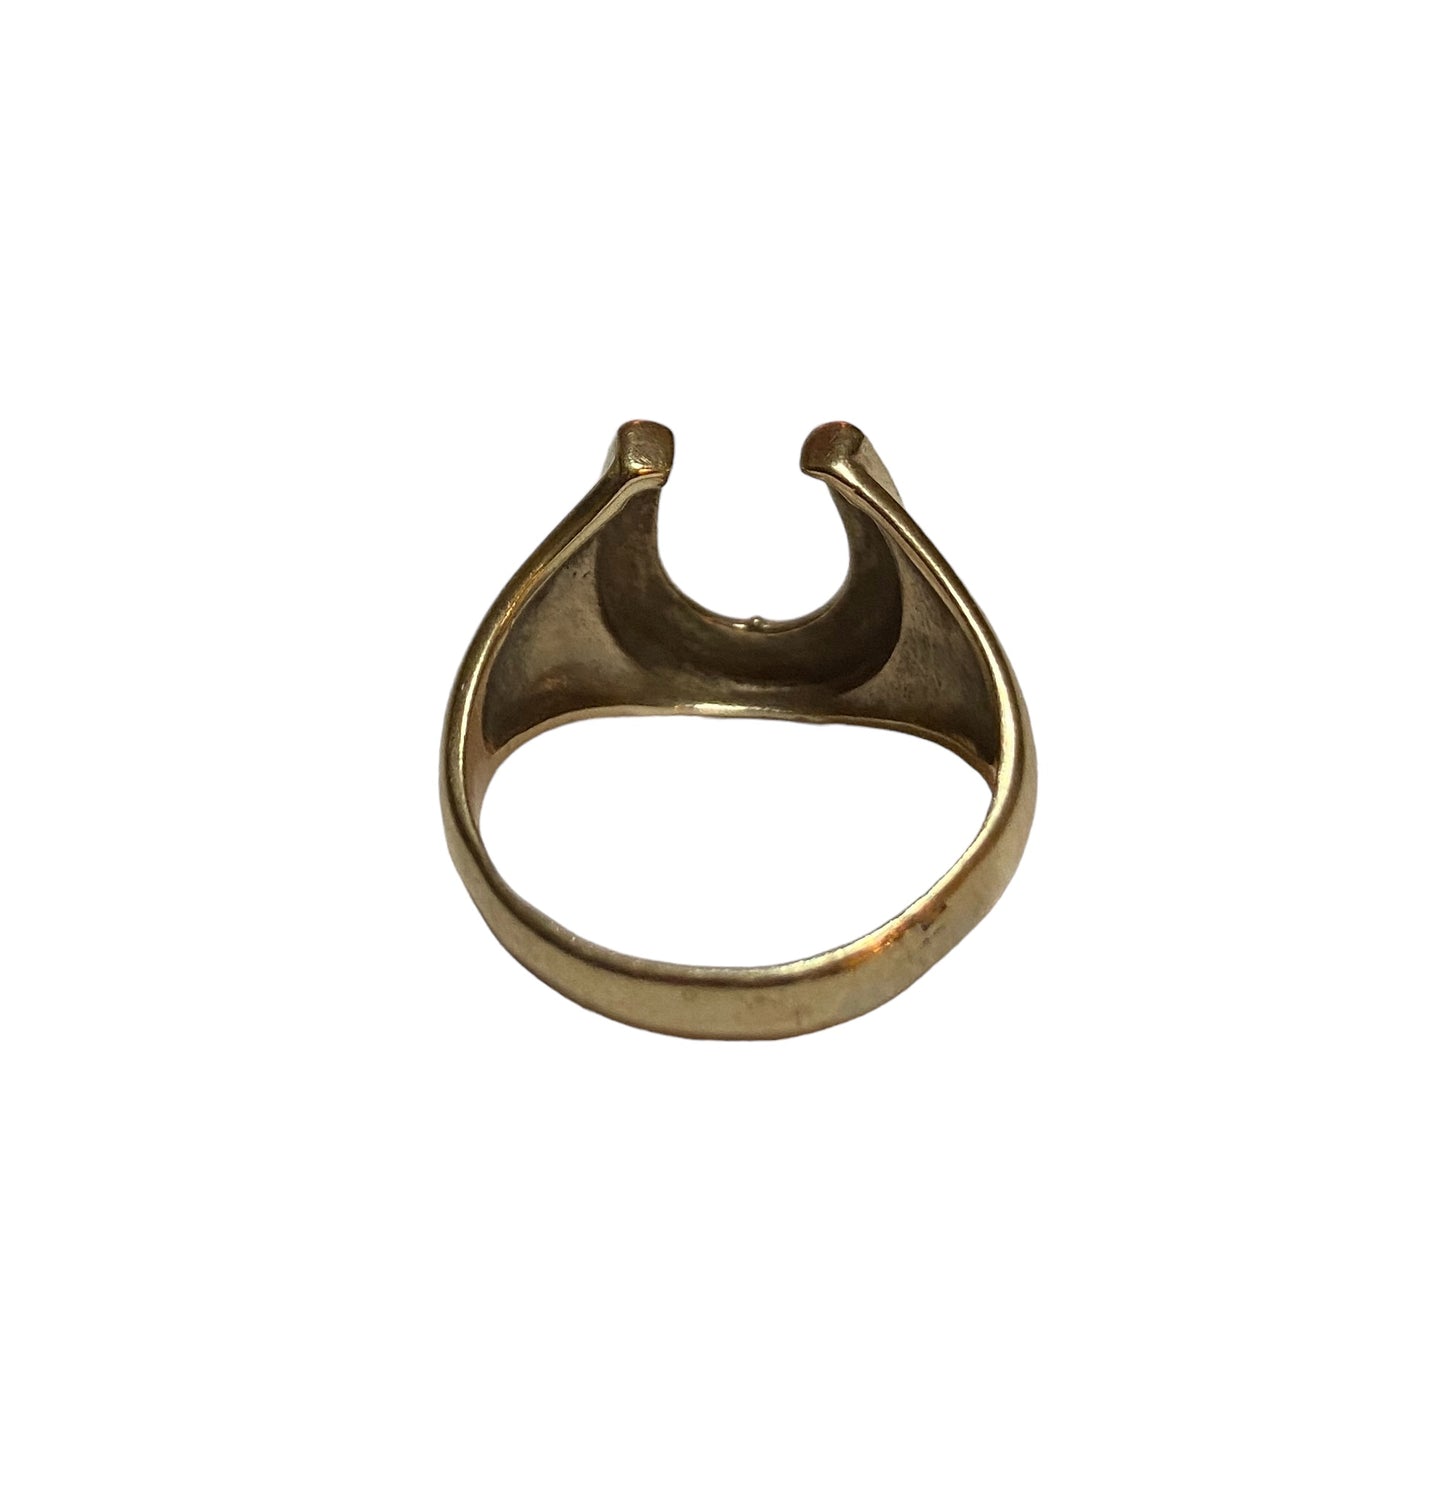 9ct vintage horseshoe ring size Q 1/2 4.0g maker WHC